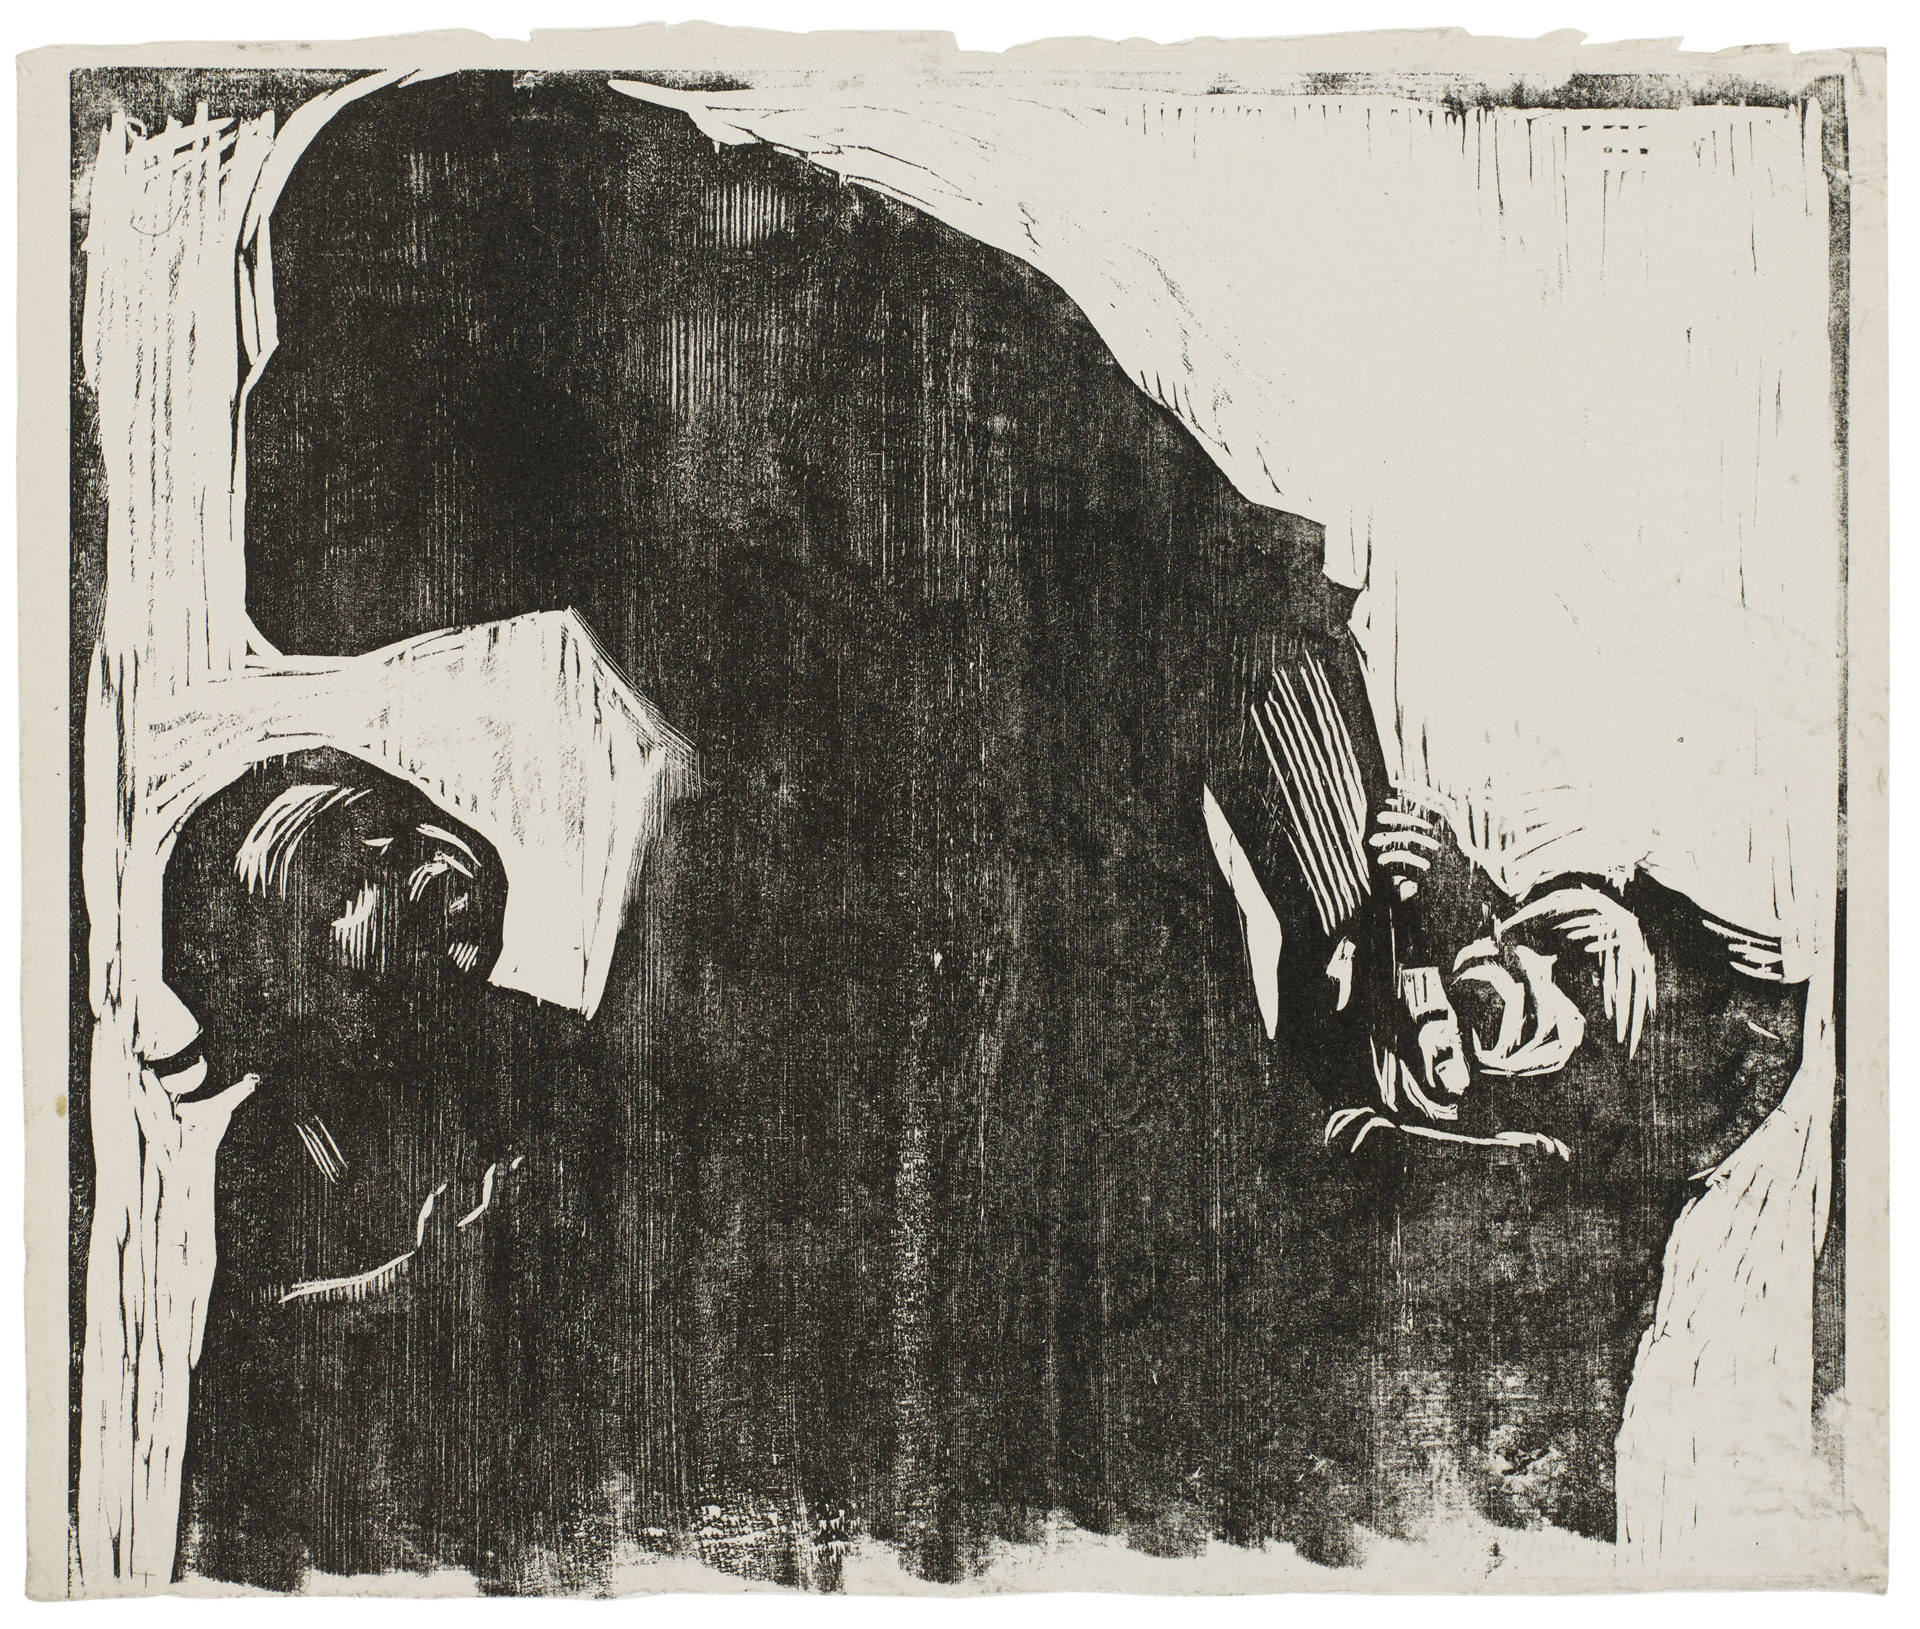 Käthe Kollwitz, Pain!, version abandonnée de la lithographie »Pain!«, 1924, gravure sur bois, Kn 207 I, Collection Kollwitz de Cologne © Käthe Kollwitz Museum Köln